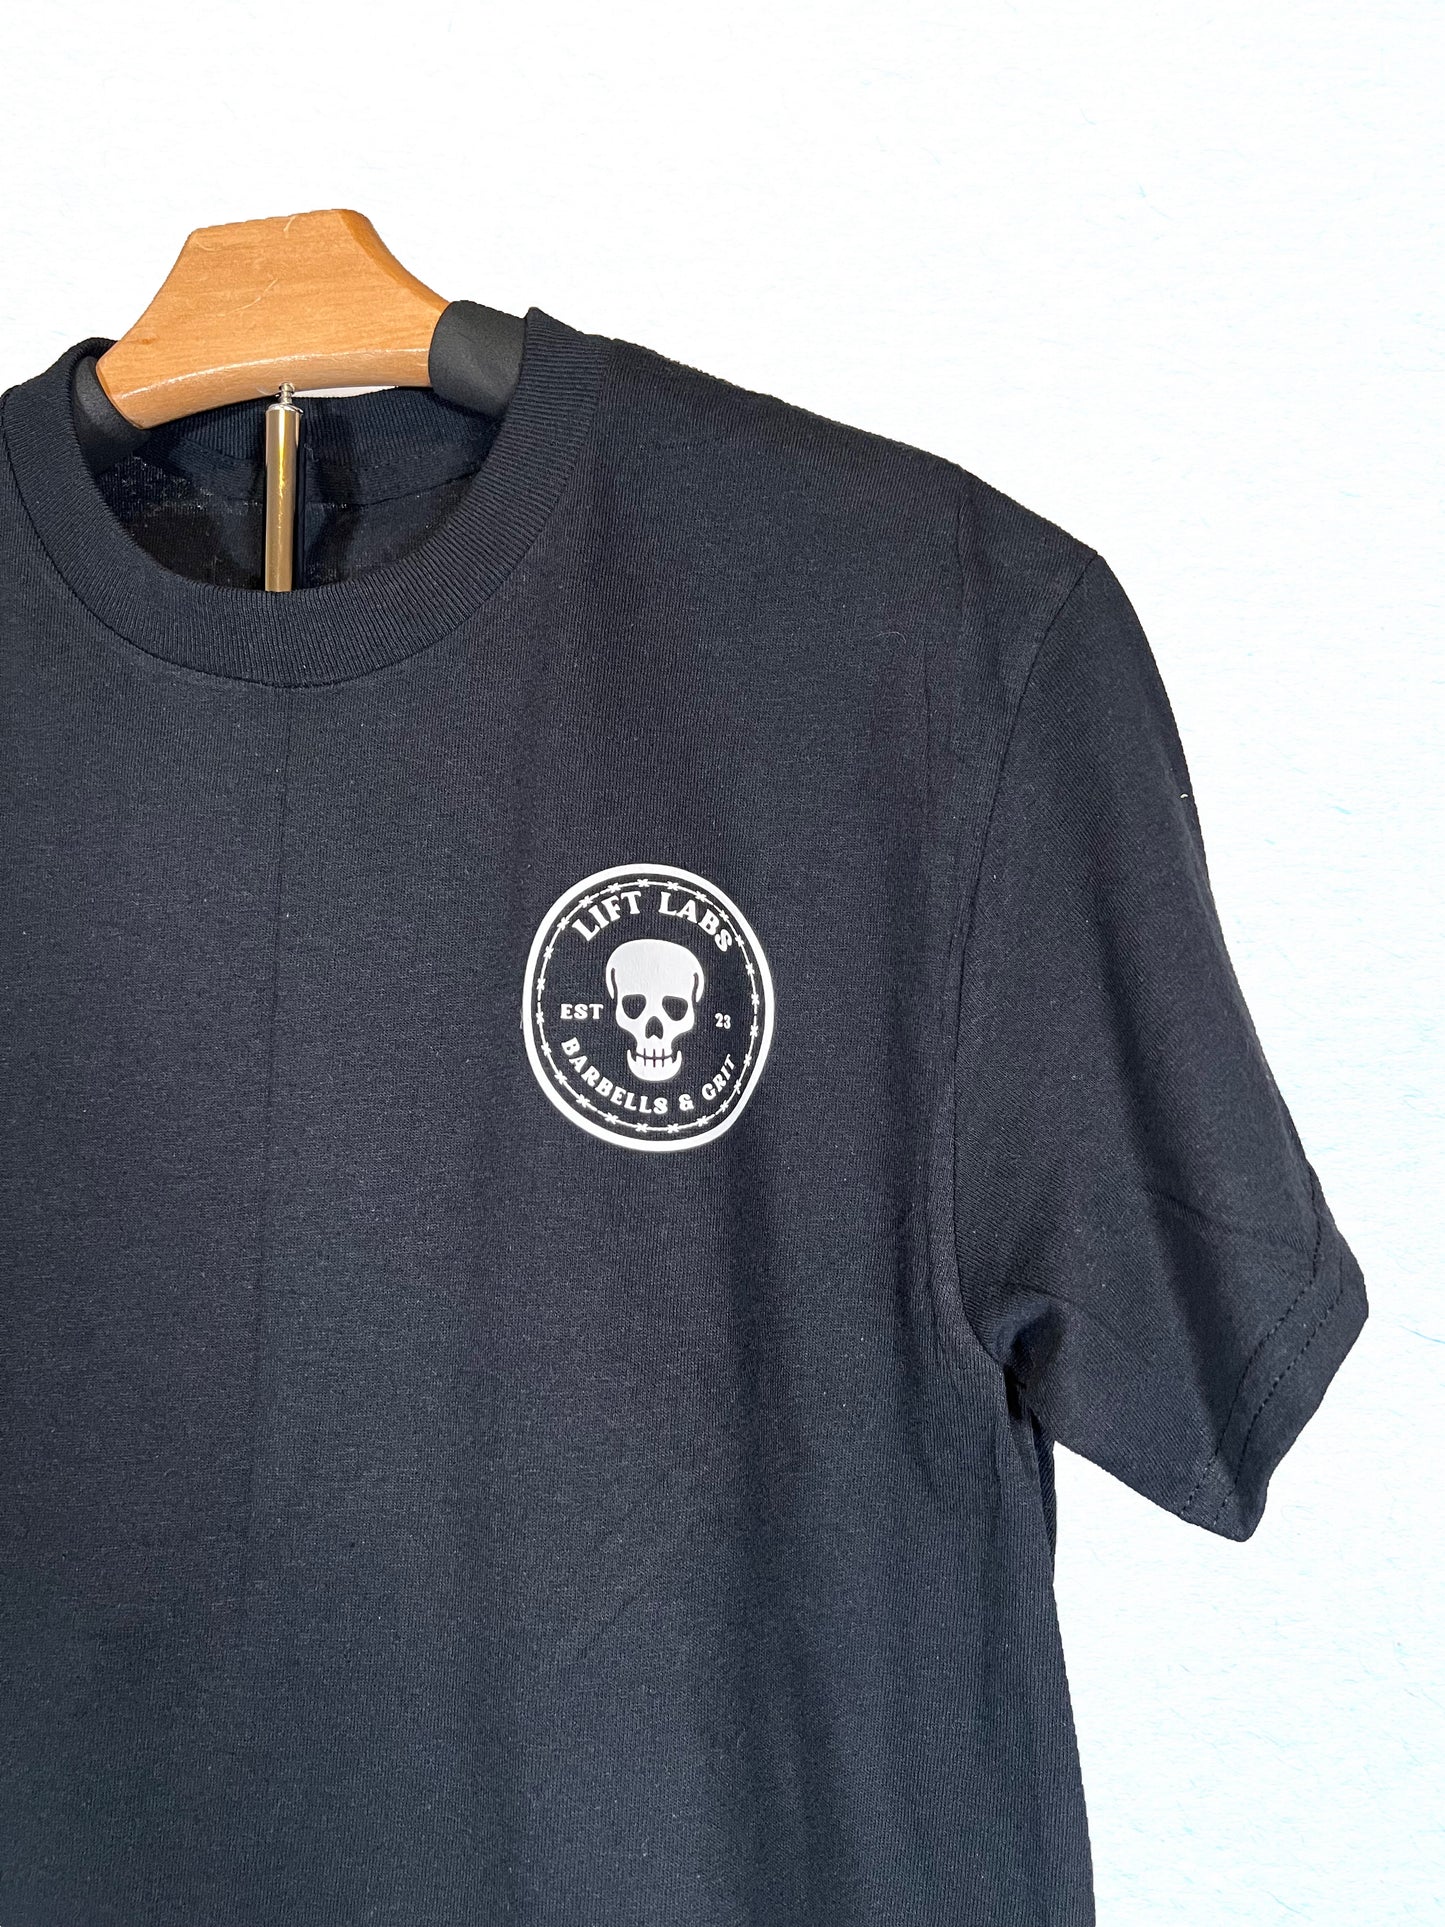 Barbell & Skull Strength T-Shirt (Black)